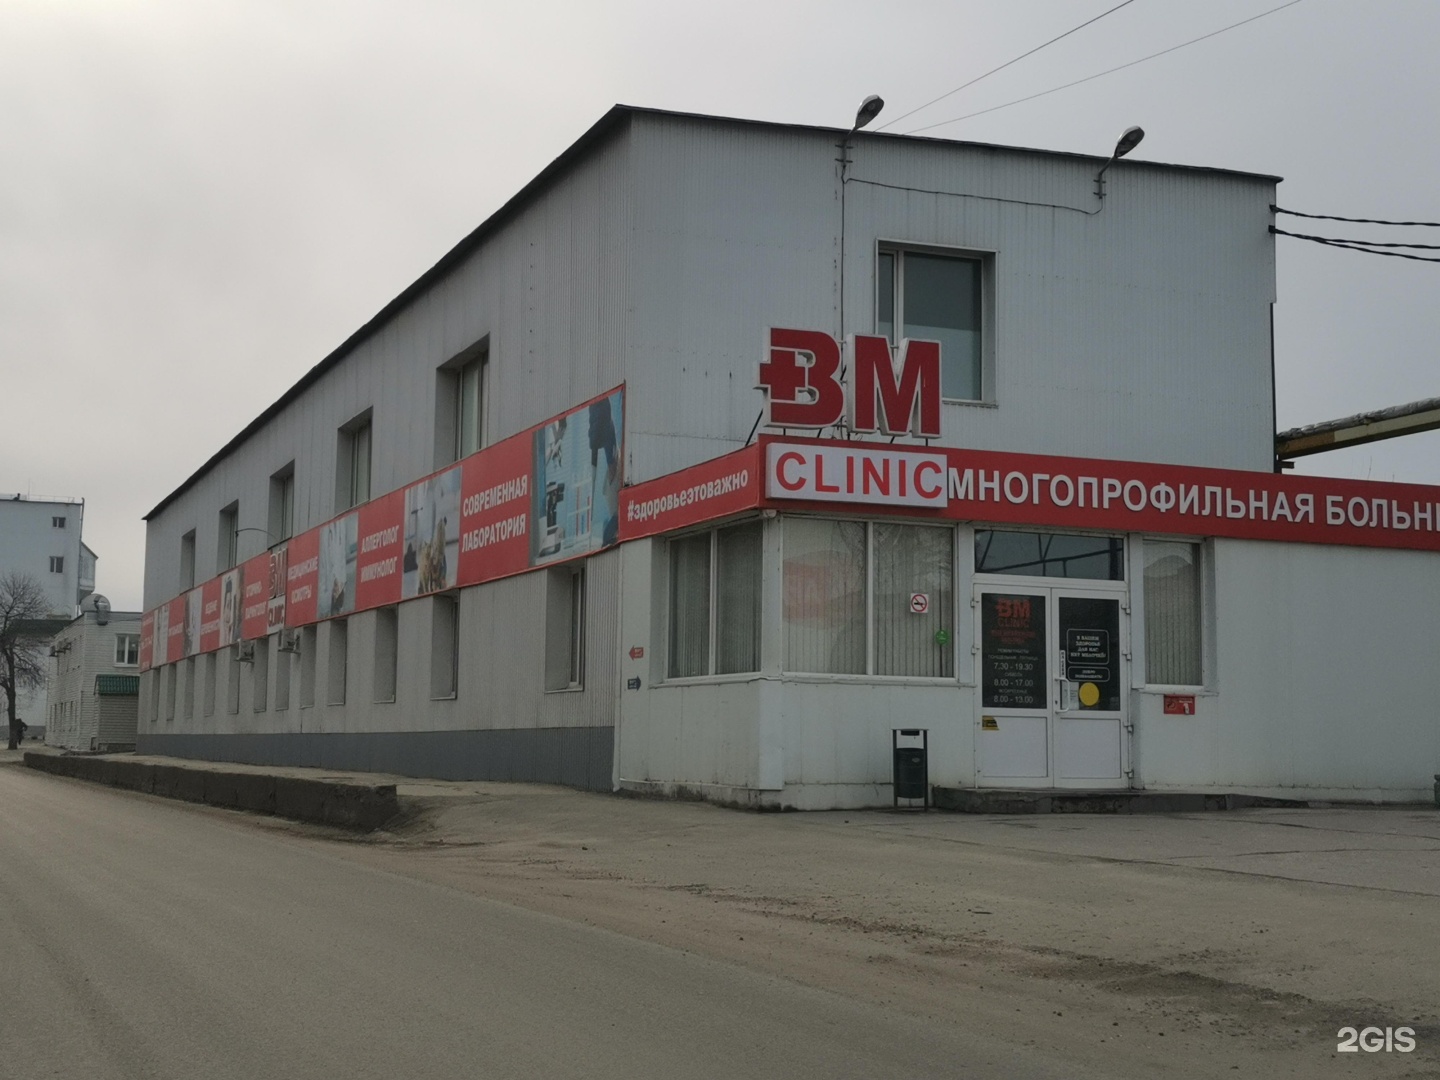 Вм клиник ульяновск телефон стоматология